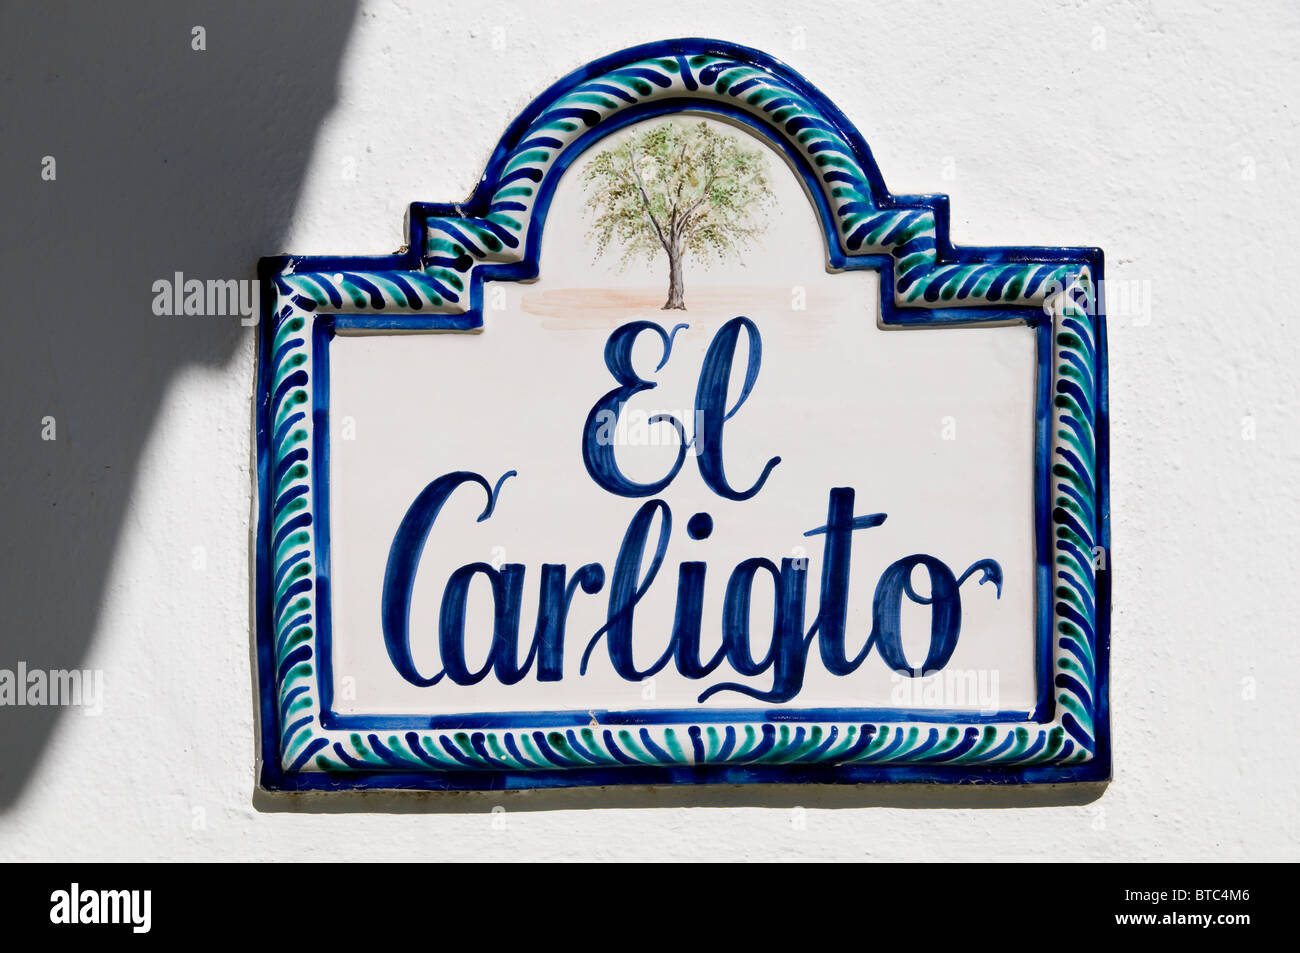 El Carligto ferme privée Espagne Andalousie Banque D'Images